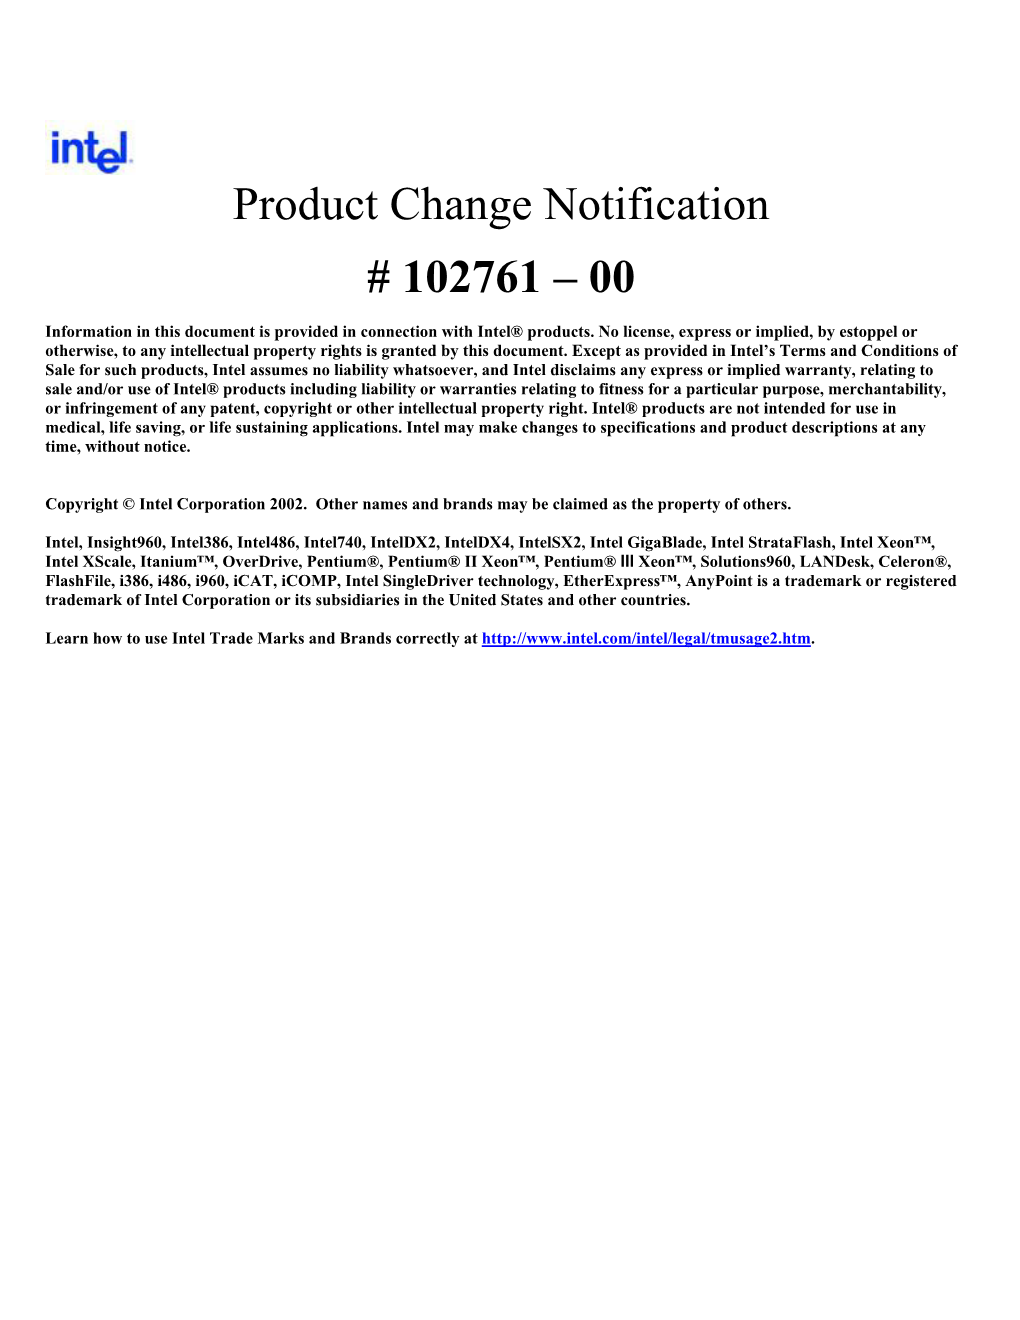 Intel Process/Product Change Notification